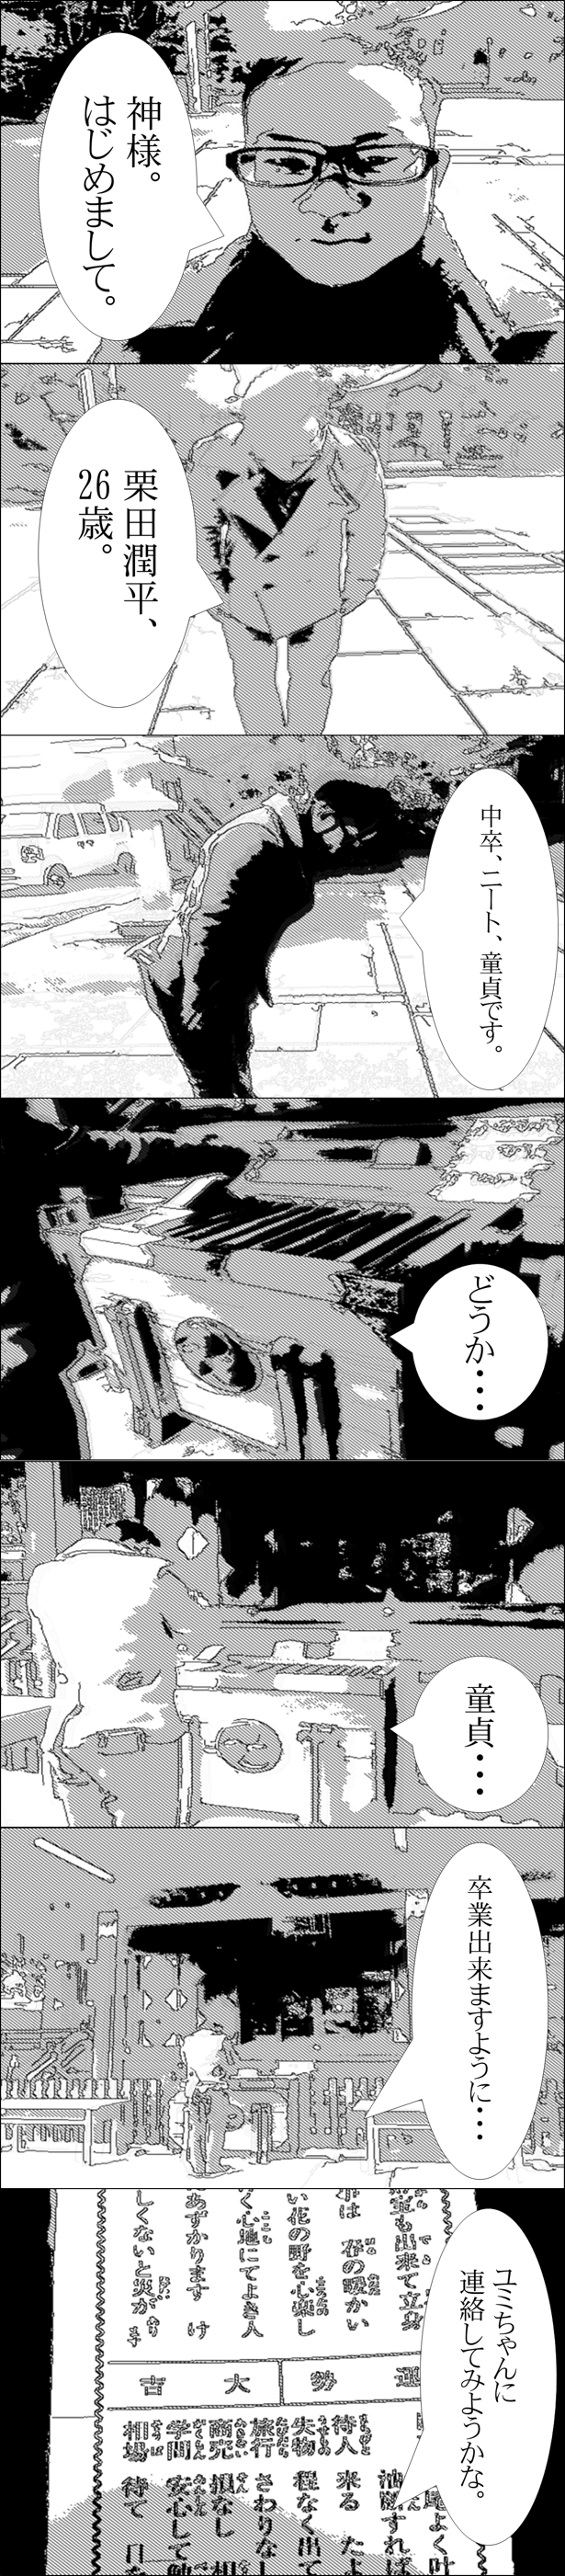 kurita_comic1 (2)